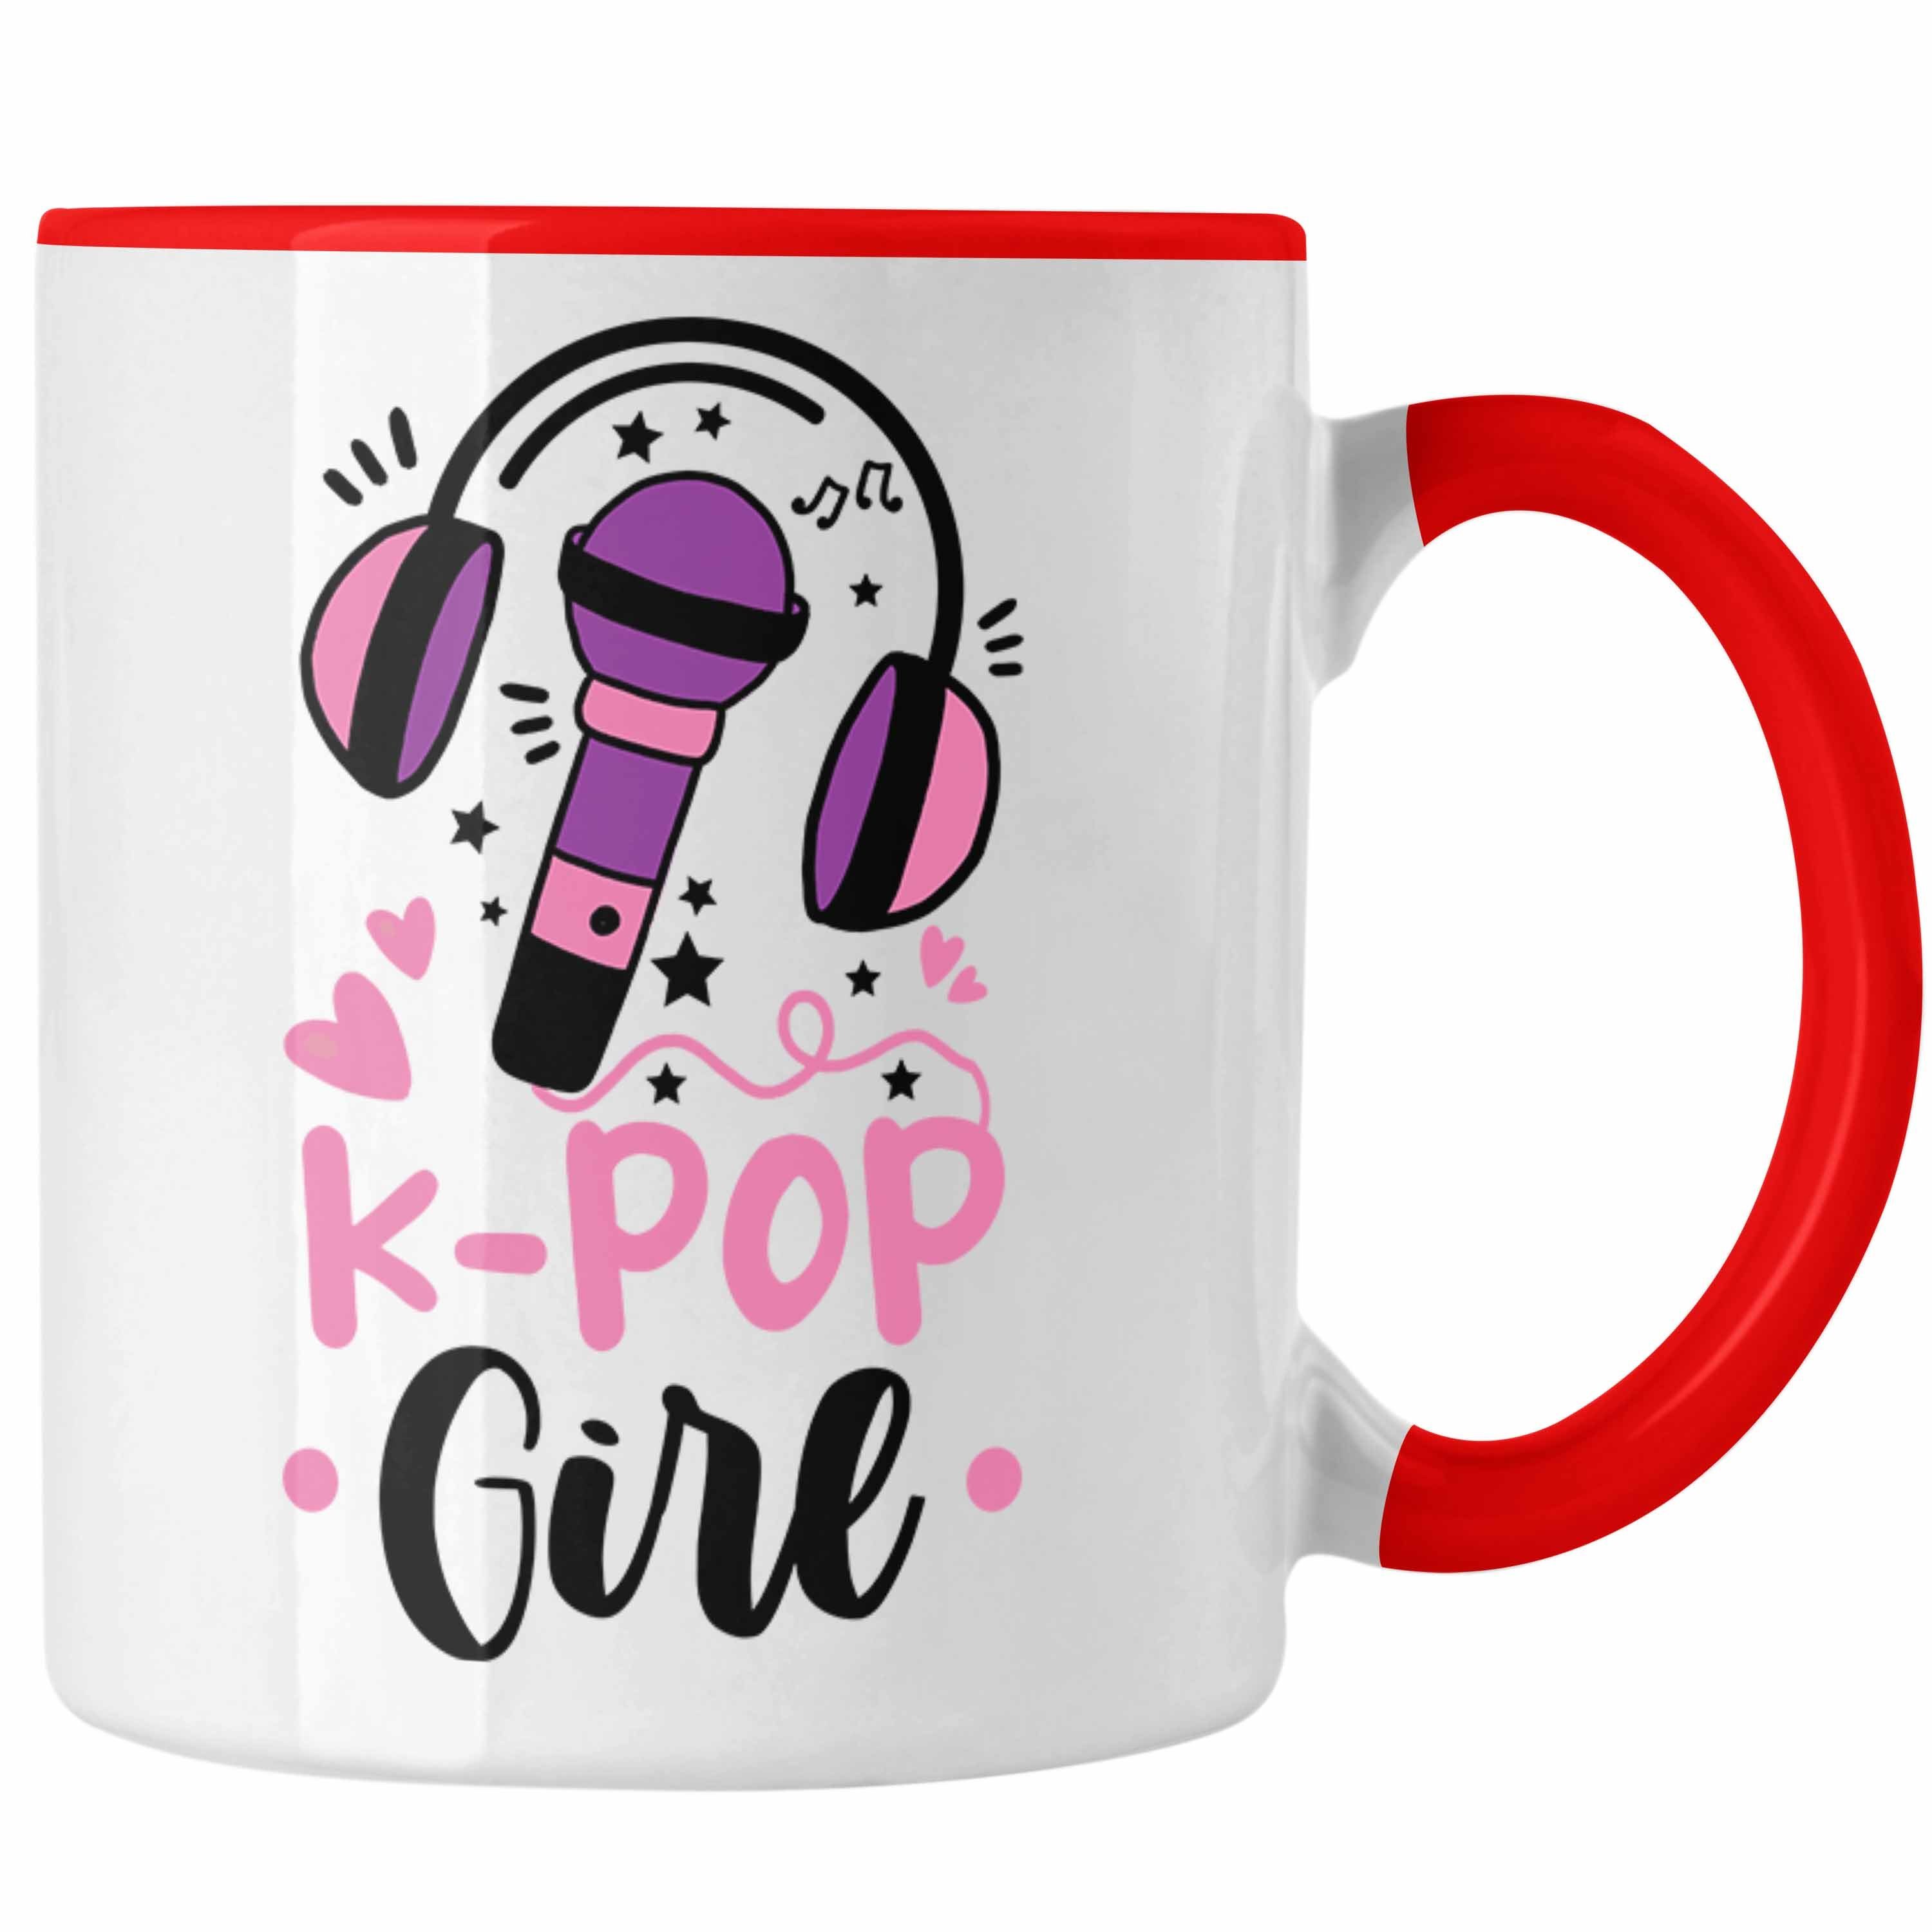 Trendation Tasse Trendation - K-Pop Geschenk für Liebhaber Tasse K Rot Pop Girl